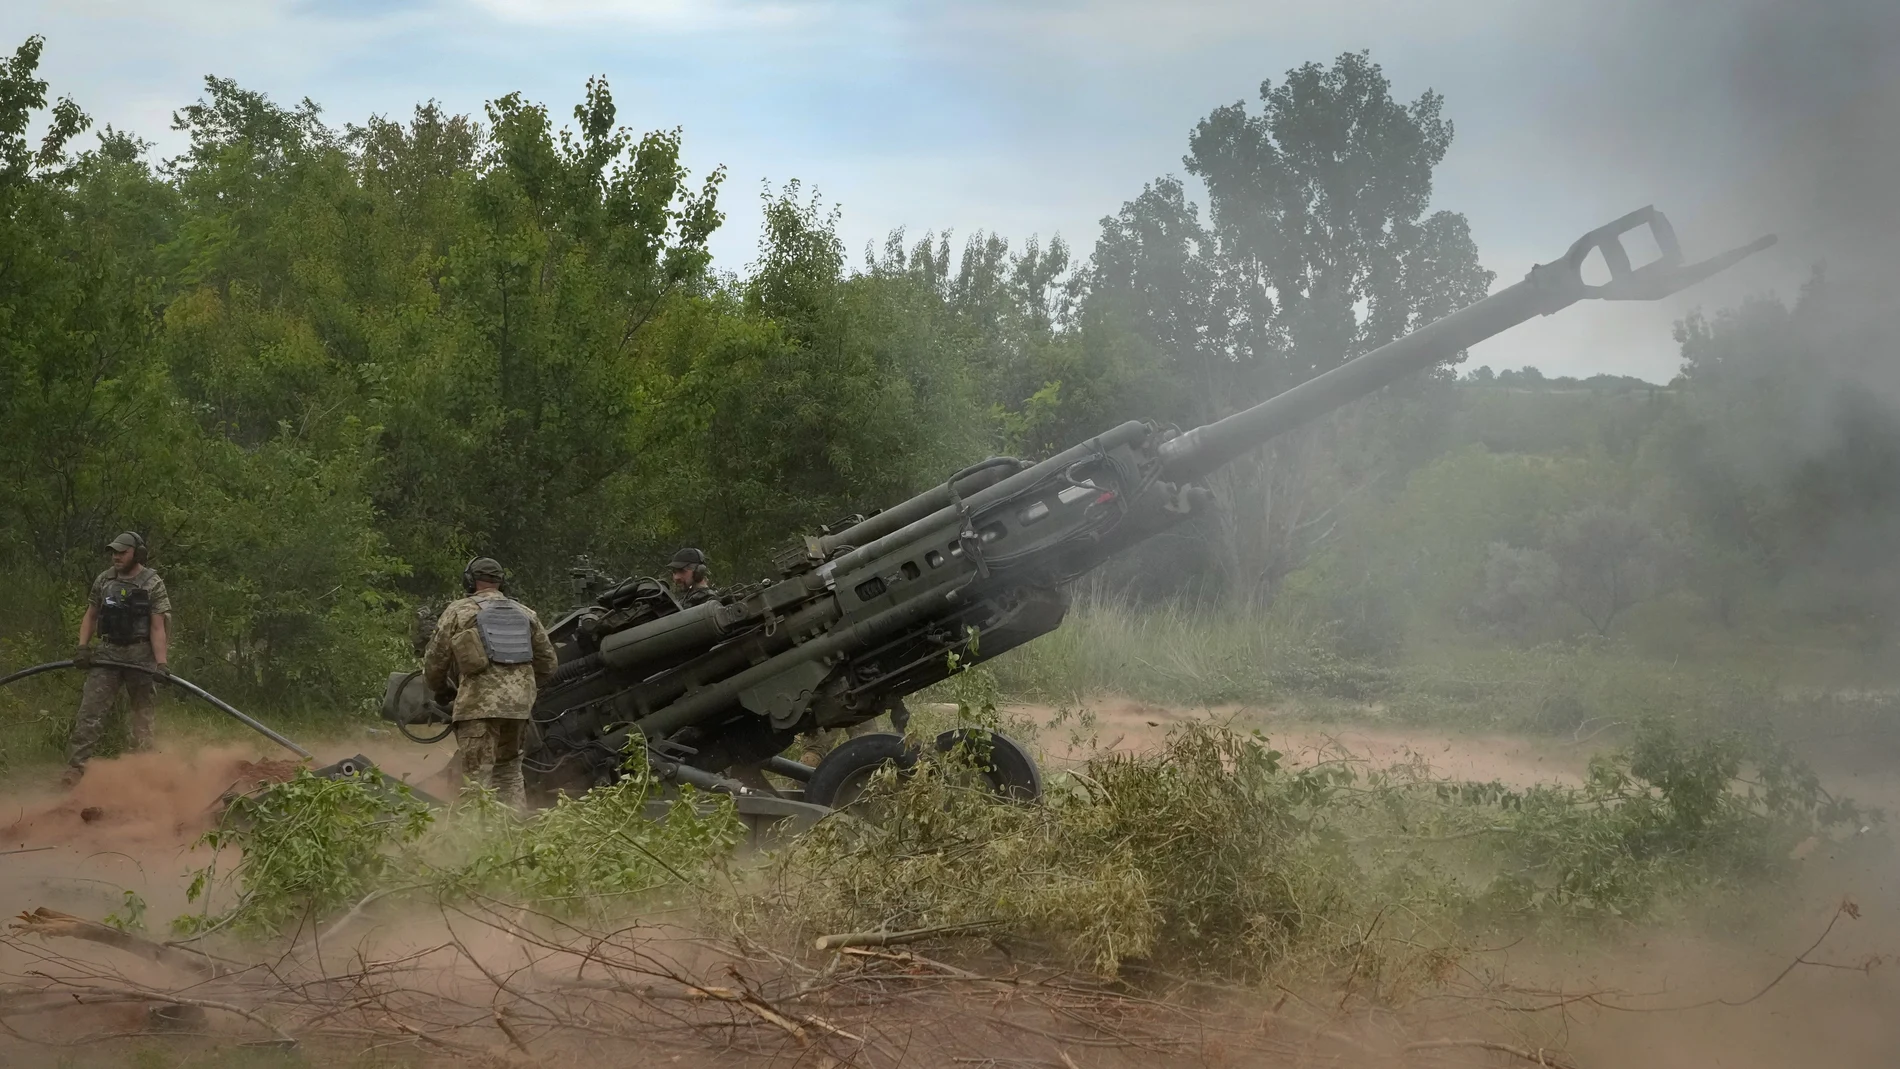 Excalibur ya ha desempeñado un papel importante en la guerra de Ucrania gracias al obús M777, que dispara proyectiles